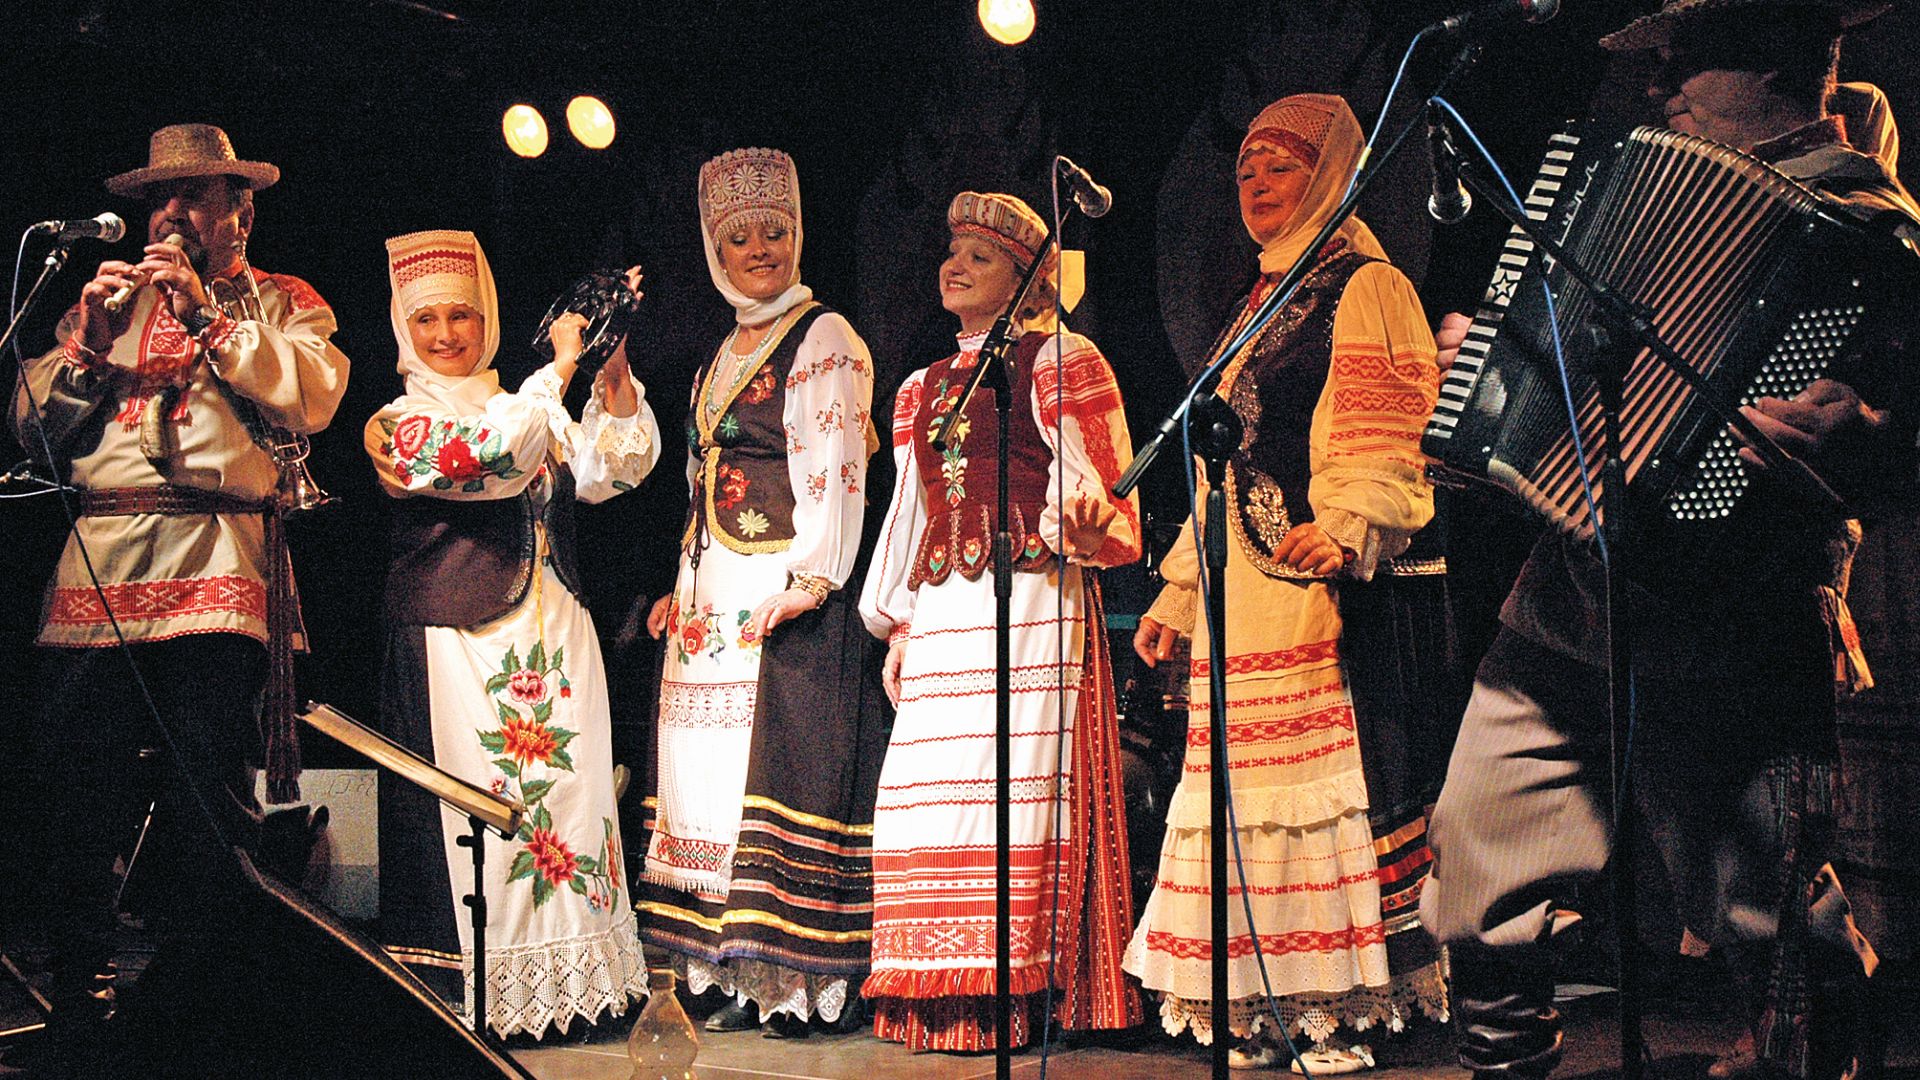 [Scena festiwalu. Widzimy cztery kobiety w tradycyjnych strojach białoruskich Po ich bokach stopją mężczyźni grający na instrumentach - akordeonie i flecie. Mężczyźni w strojach tradycyjnych]